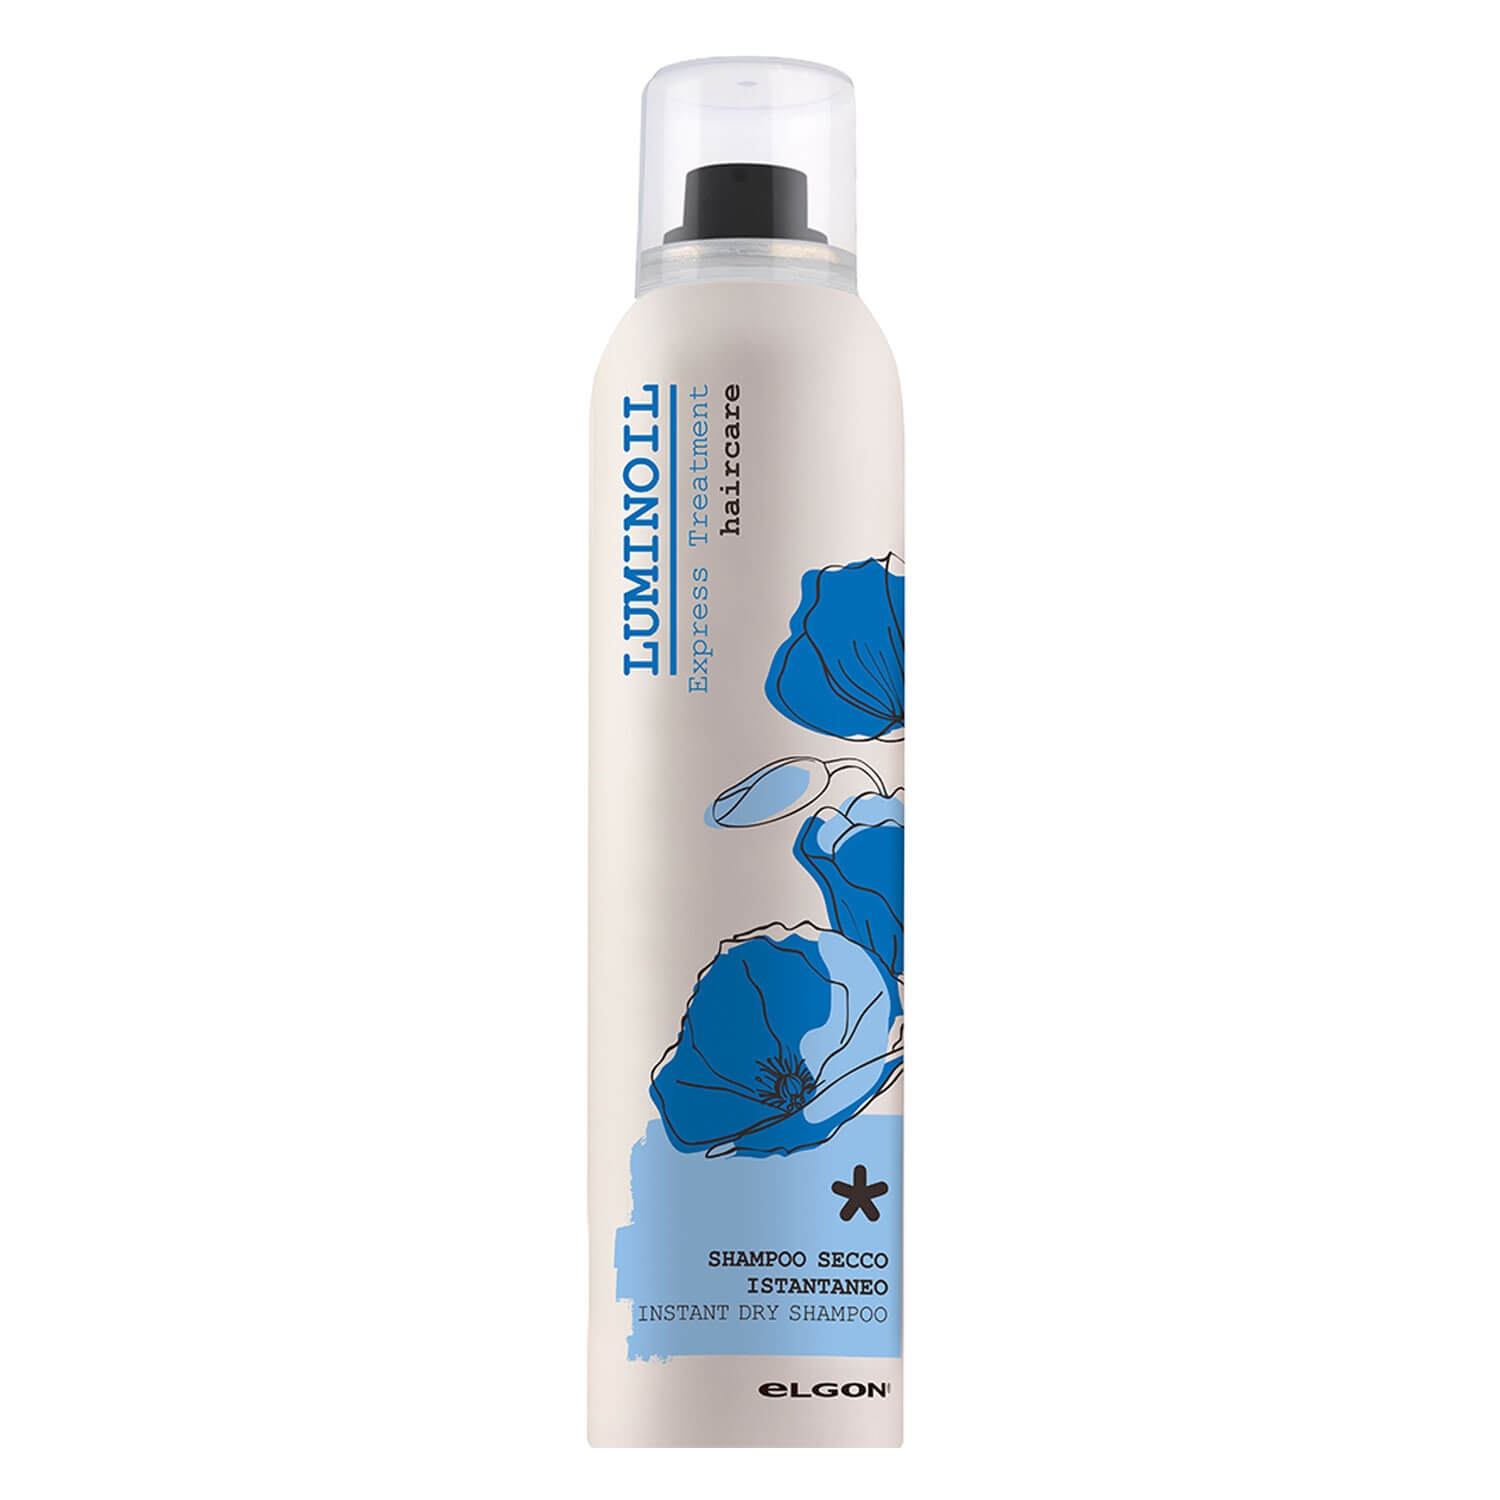 Produktbild von Luminoil - Instant Dry Shampoo